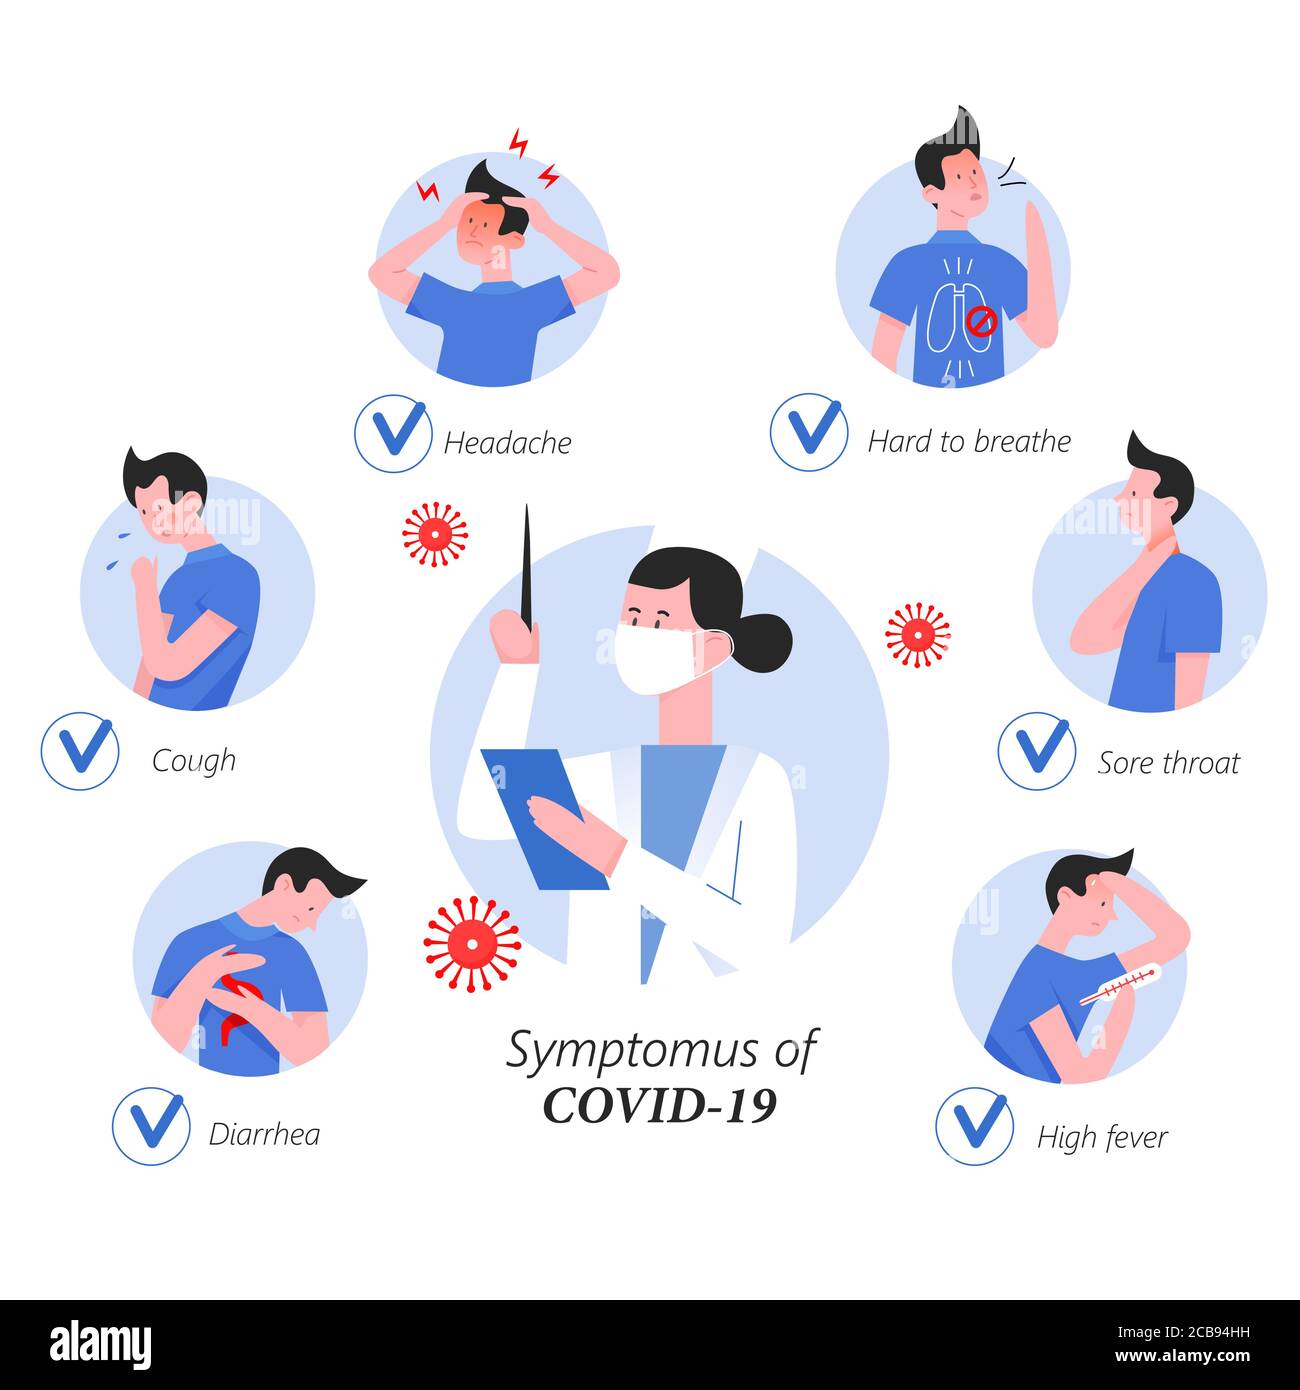 Sintomi del coronavirus illustrazione vettoriale piatta infografica. Le icone in cerchio con il medico al centro mostra i segni di covid 19. Difficile respirare, mal di gola, febbre alta, diarrea, tosse, mal di testa Illustrazione Vettoriale